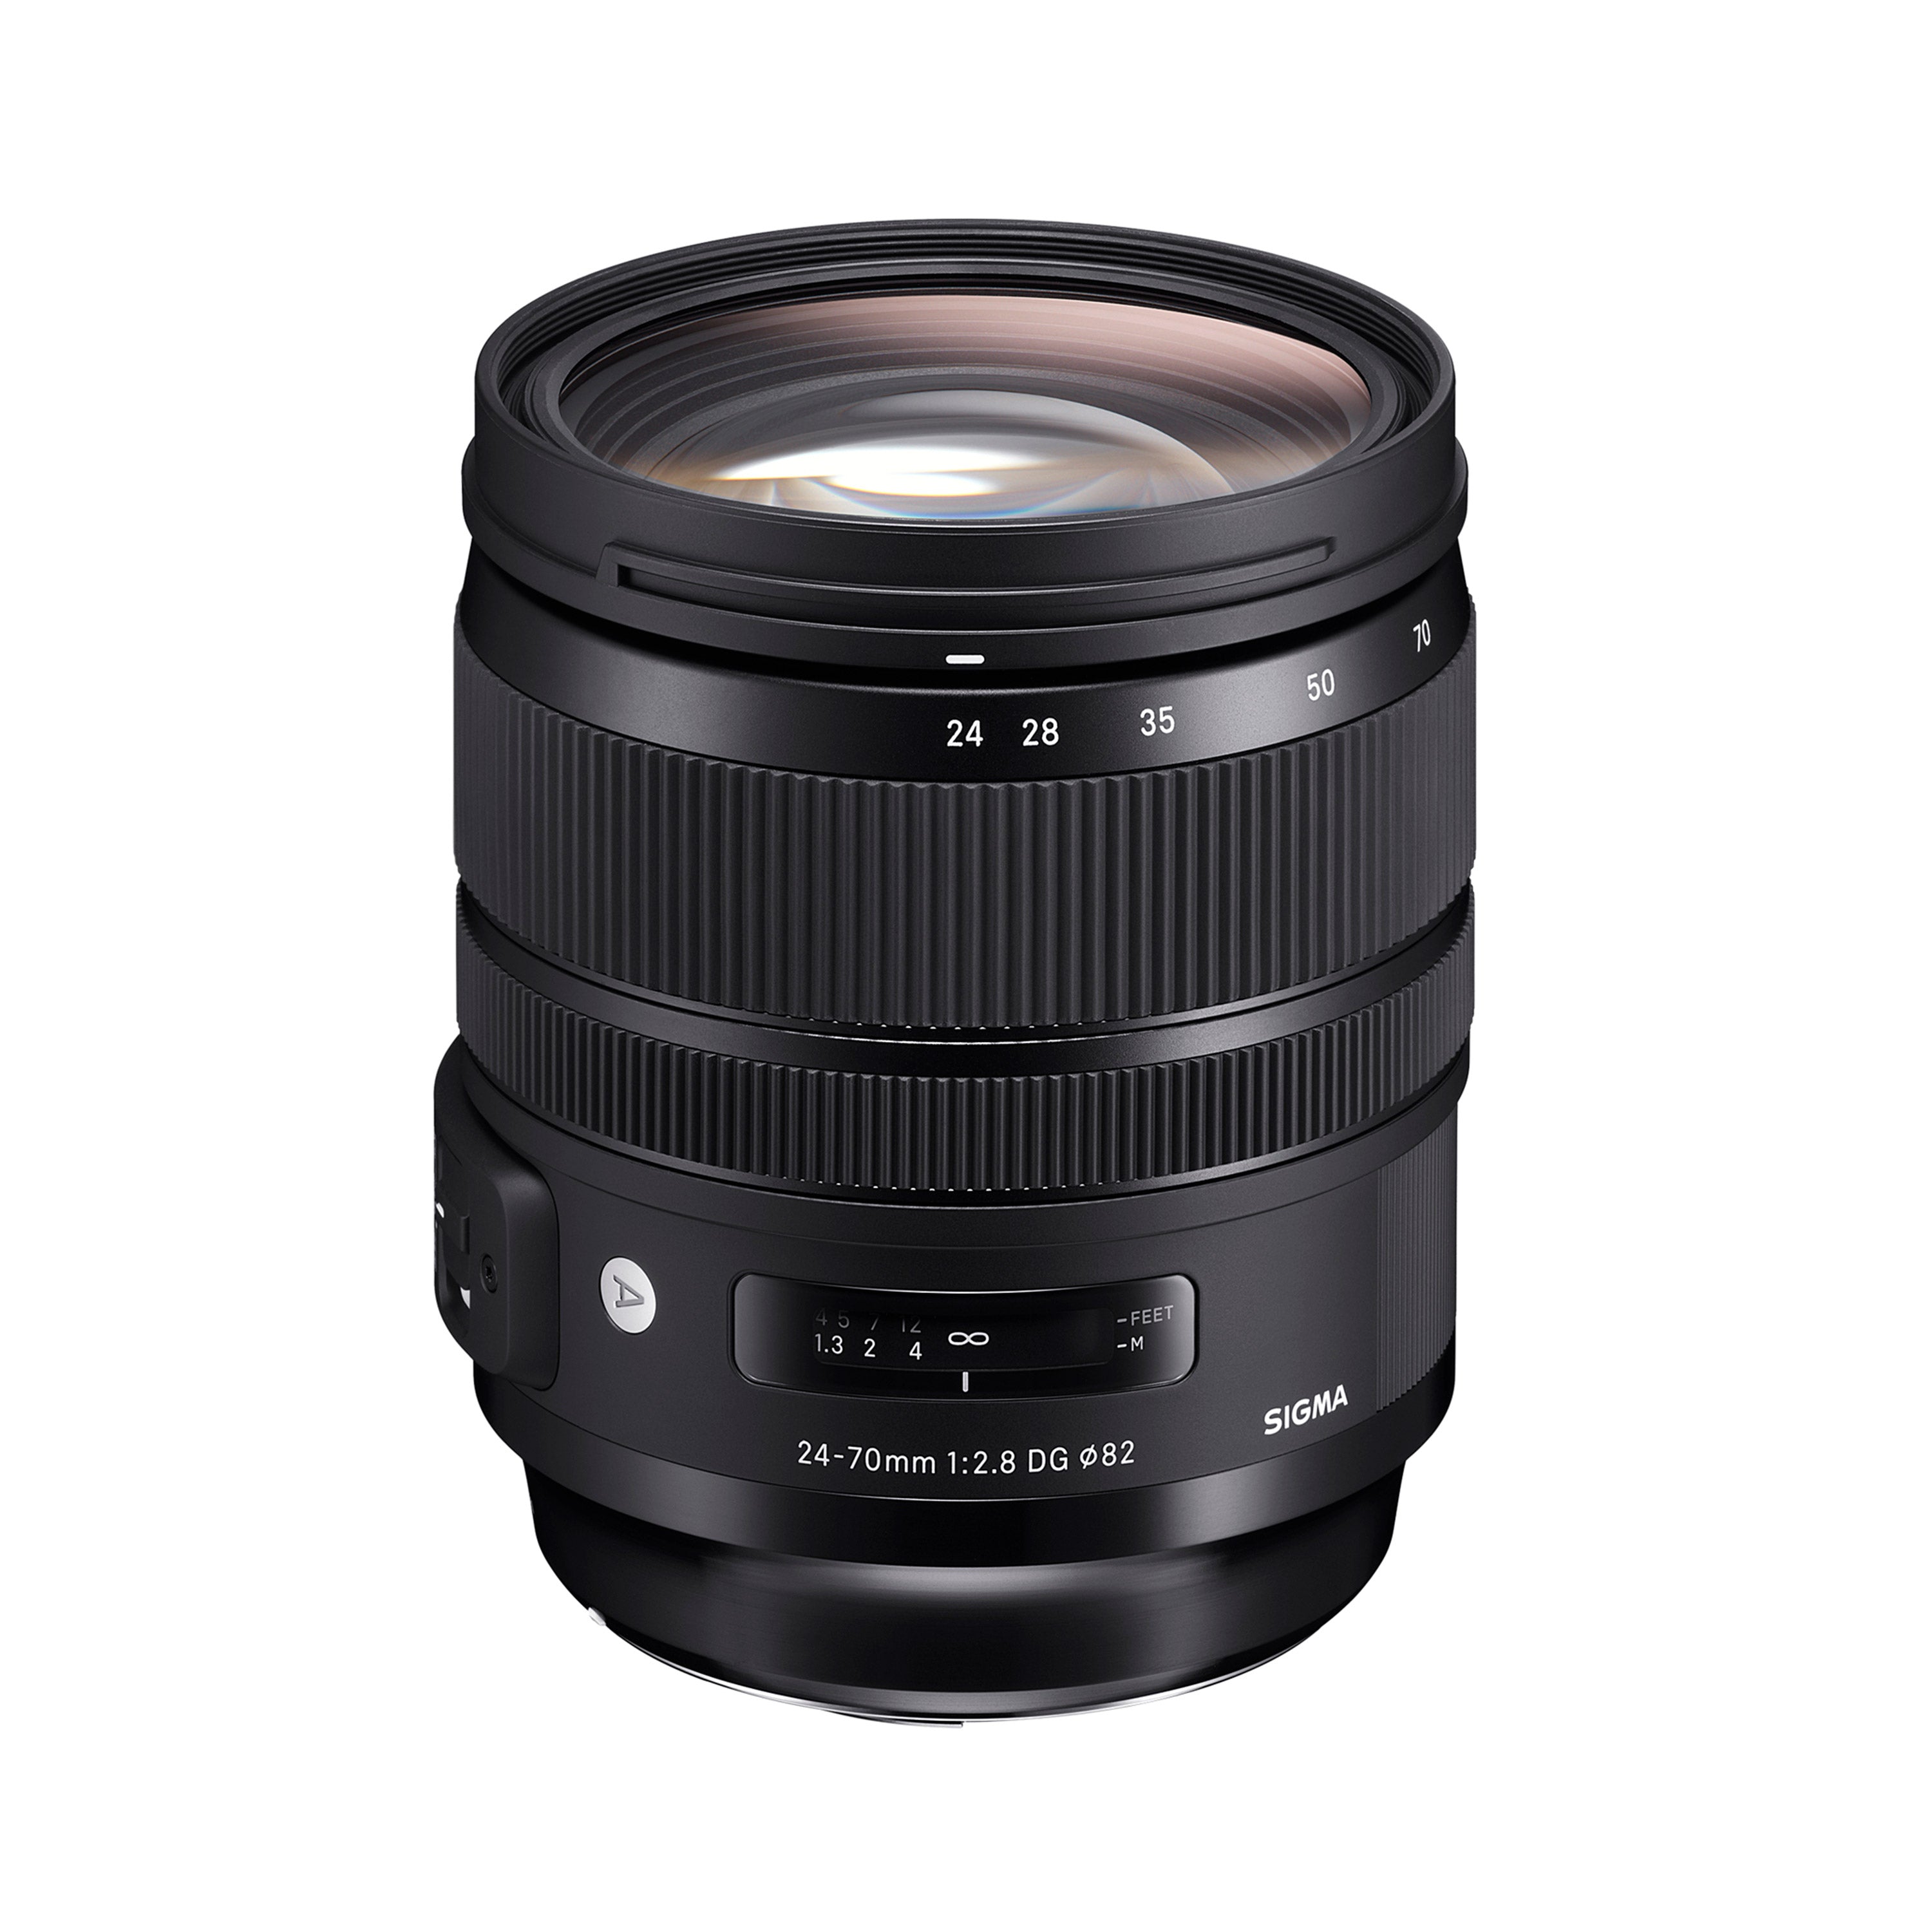 Rent a Sigma 24-70mm f/2.8 DG DN Art Lens for Sony E at